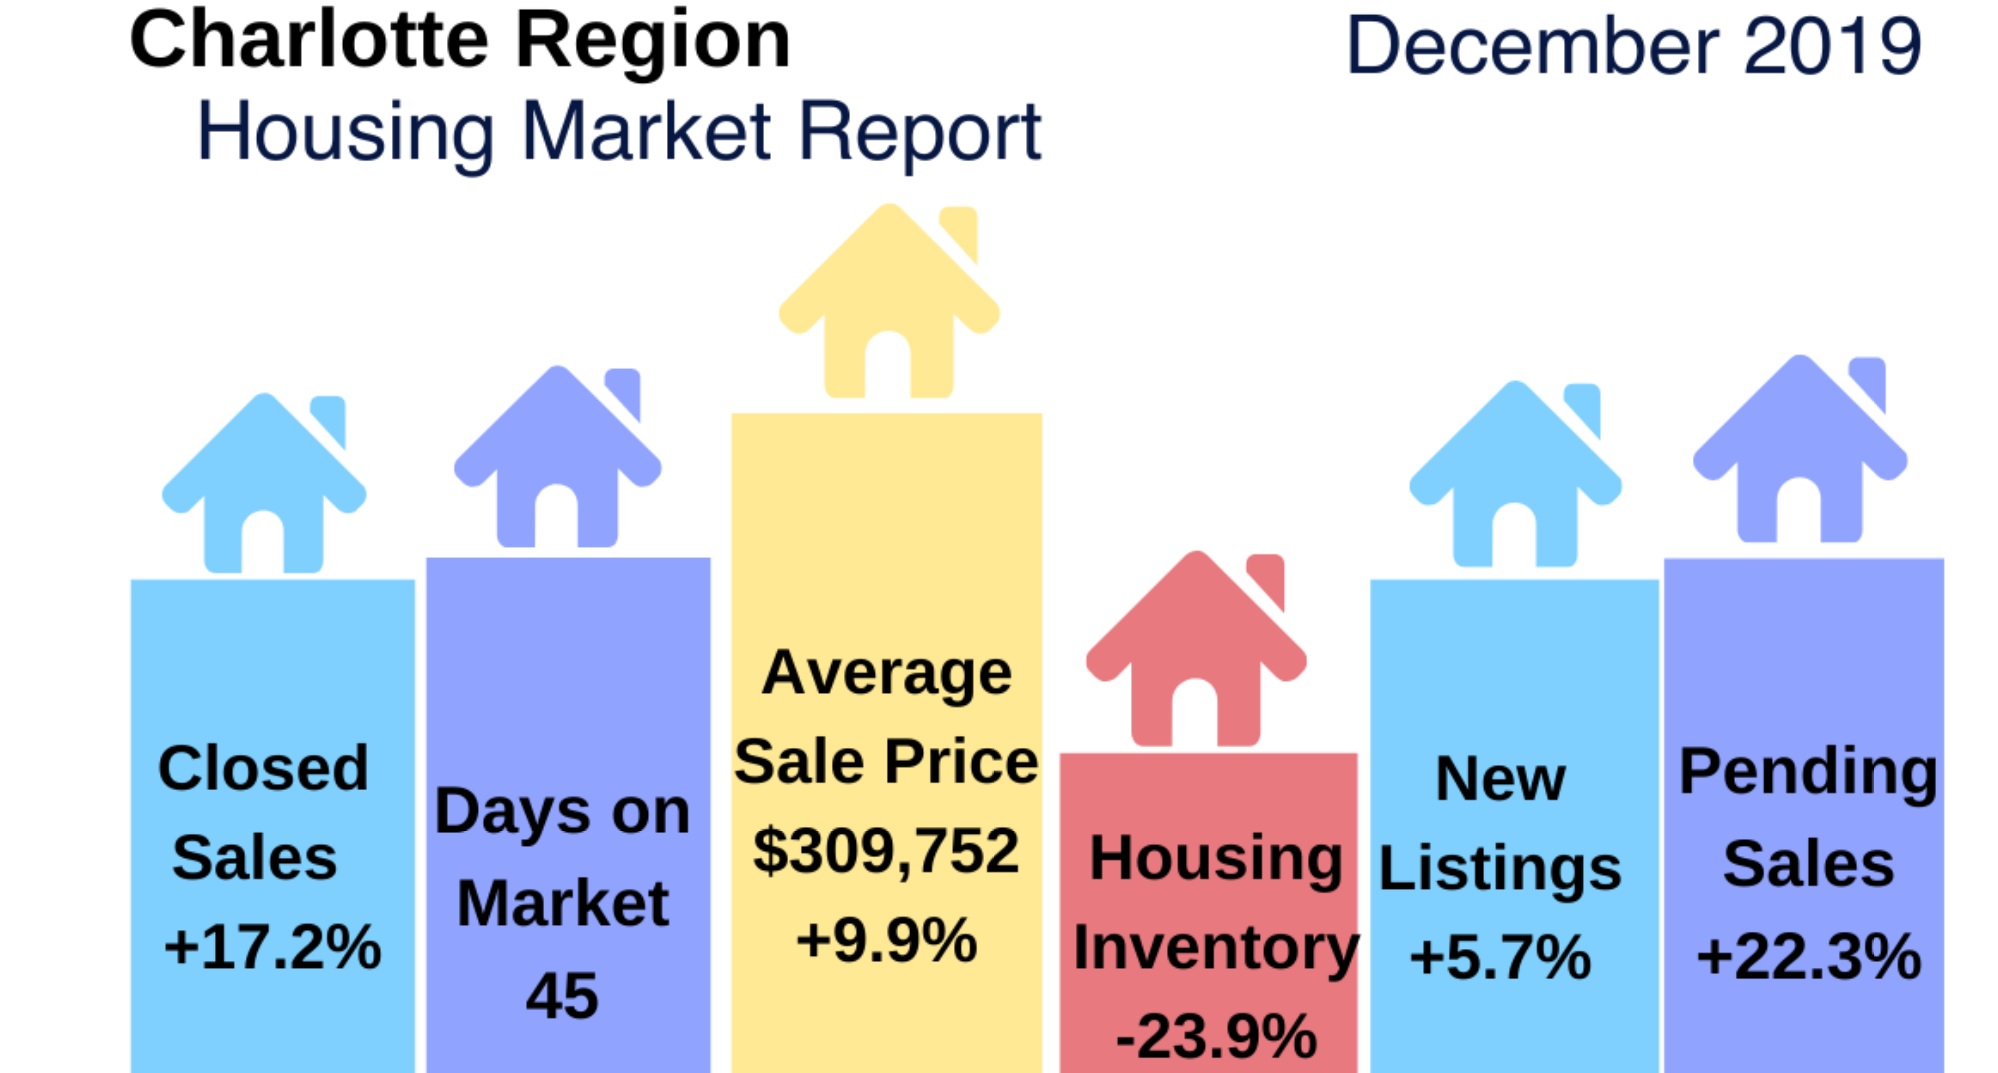 Charlotte Region Housing Market Highlights: December 2019